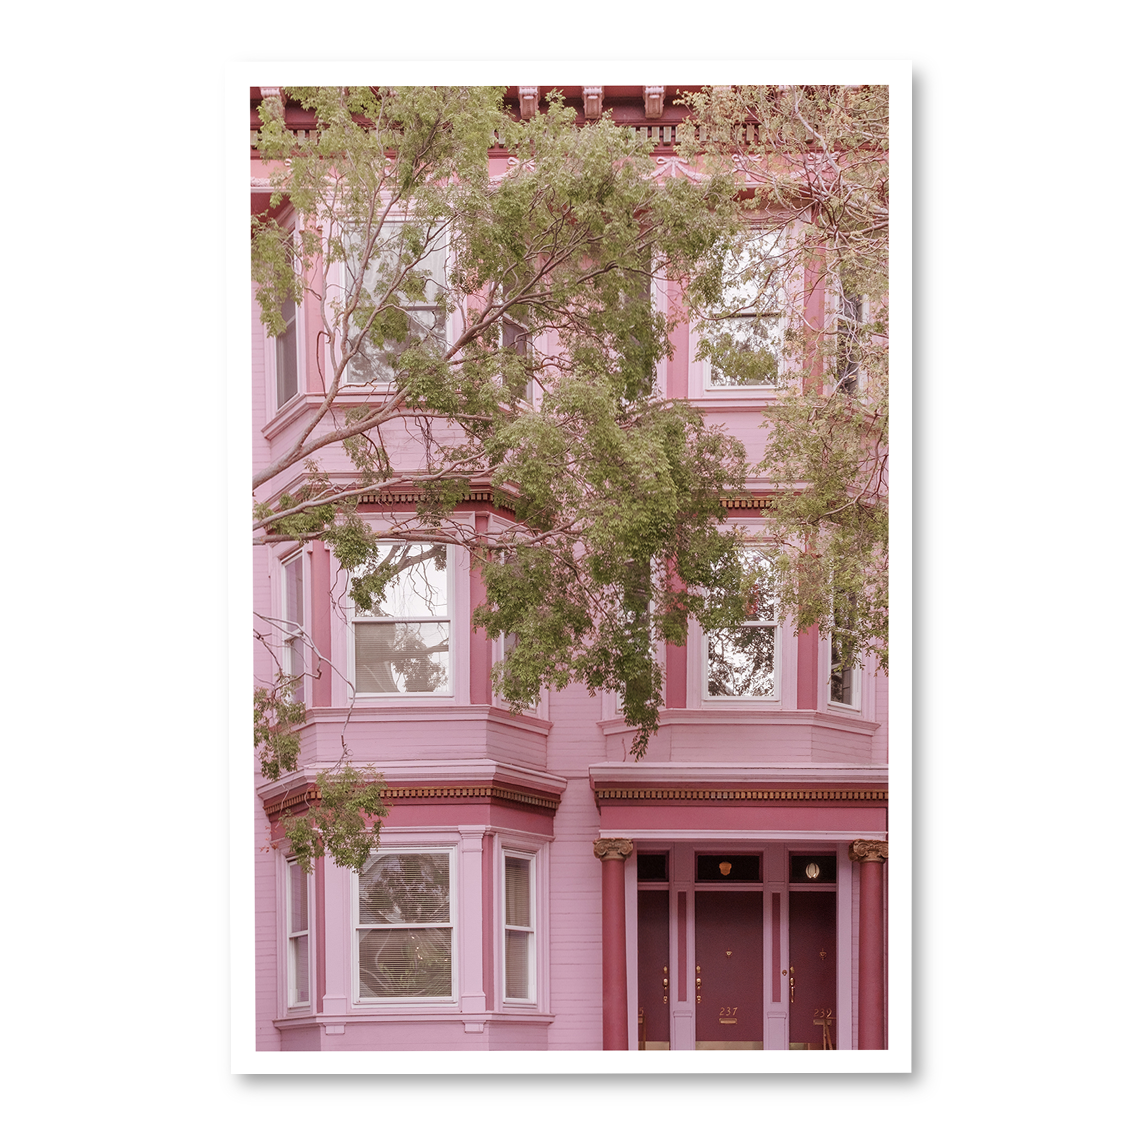 COZY BRIGHT COLOURFUL HOMES FROM SAN FRANCISCO – Fotografías originales por  Diana Navas | Crush Of Light